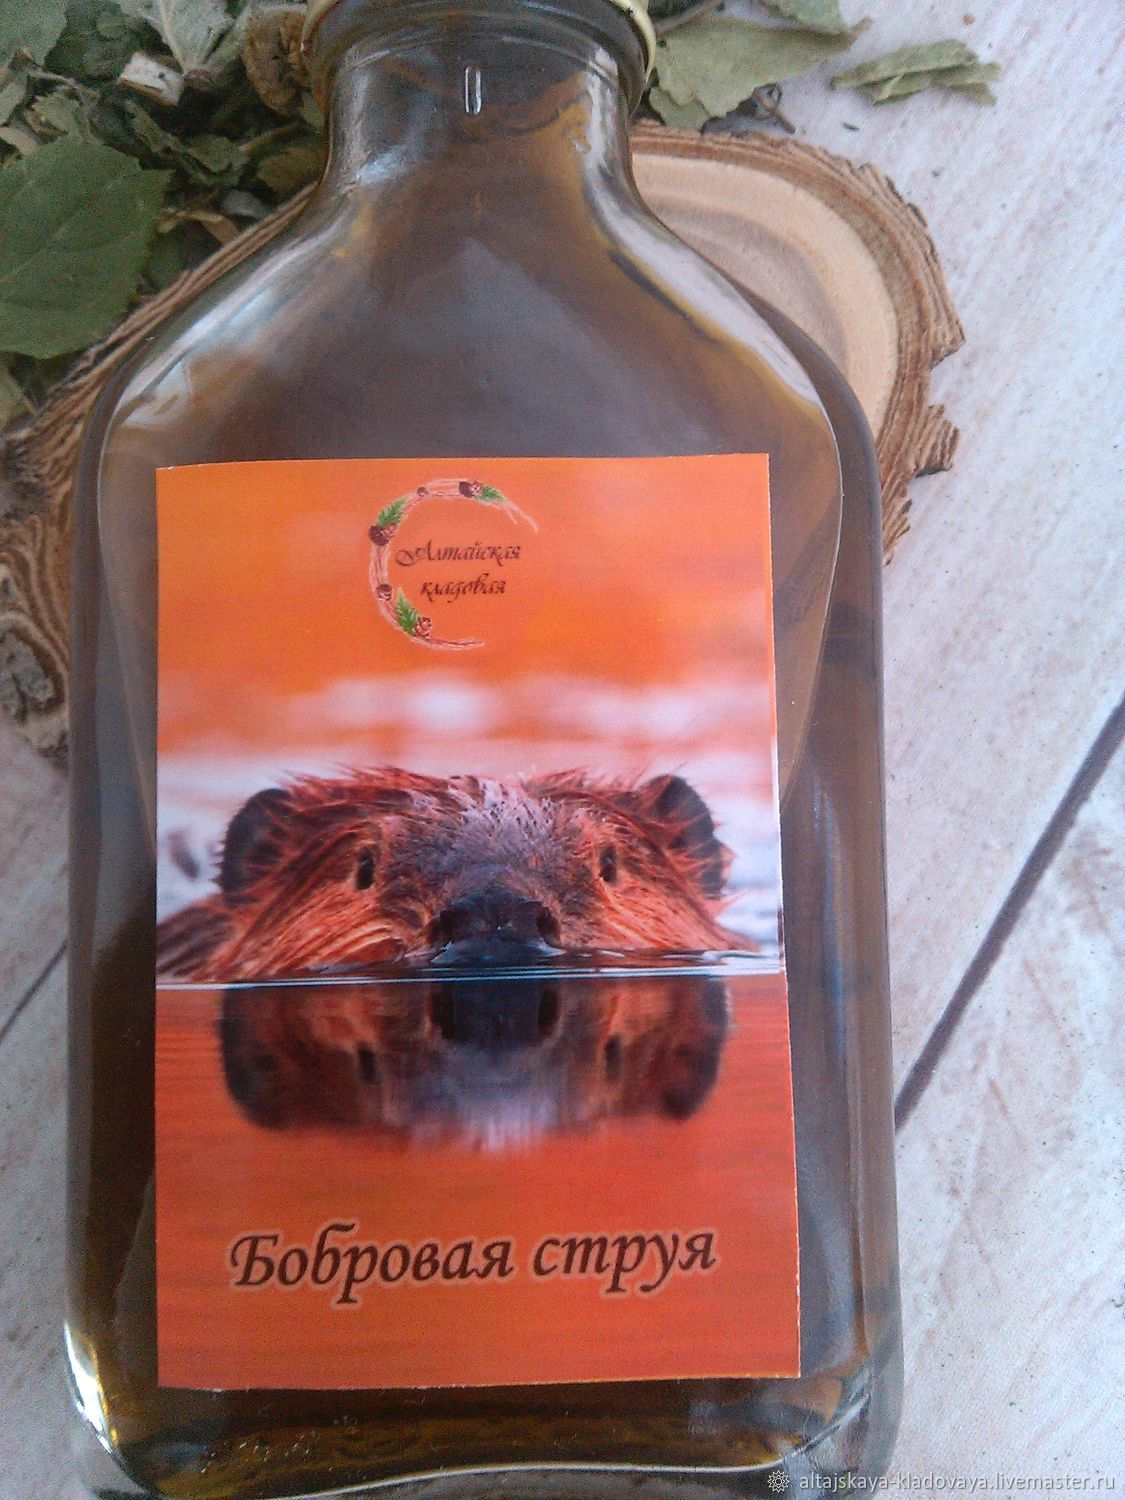 Где Купить Бобровую Струю В Новосибирске